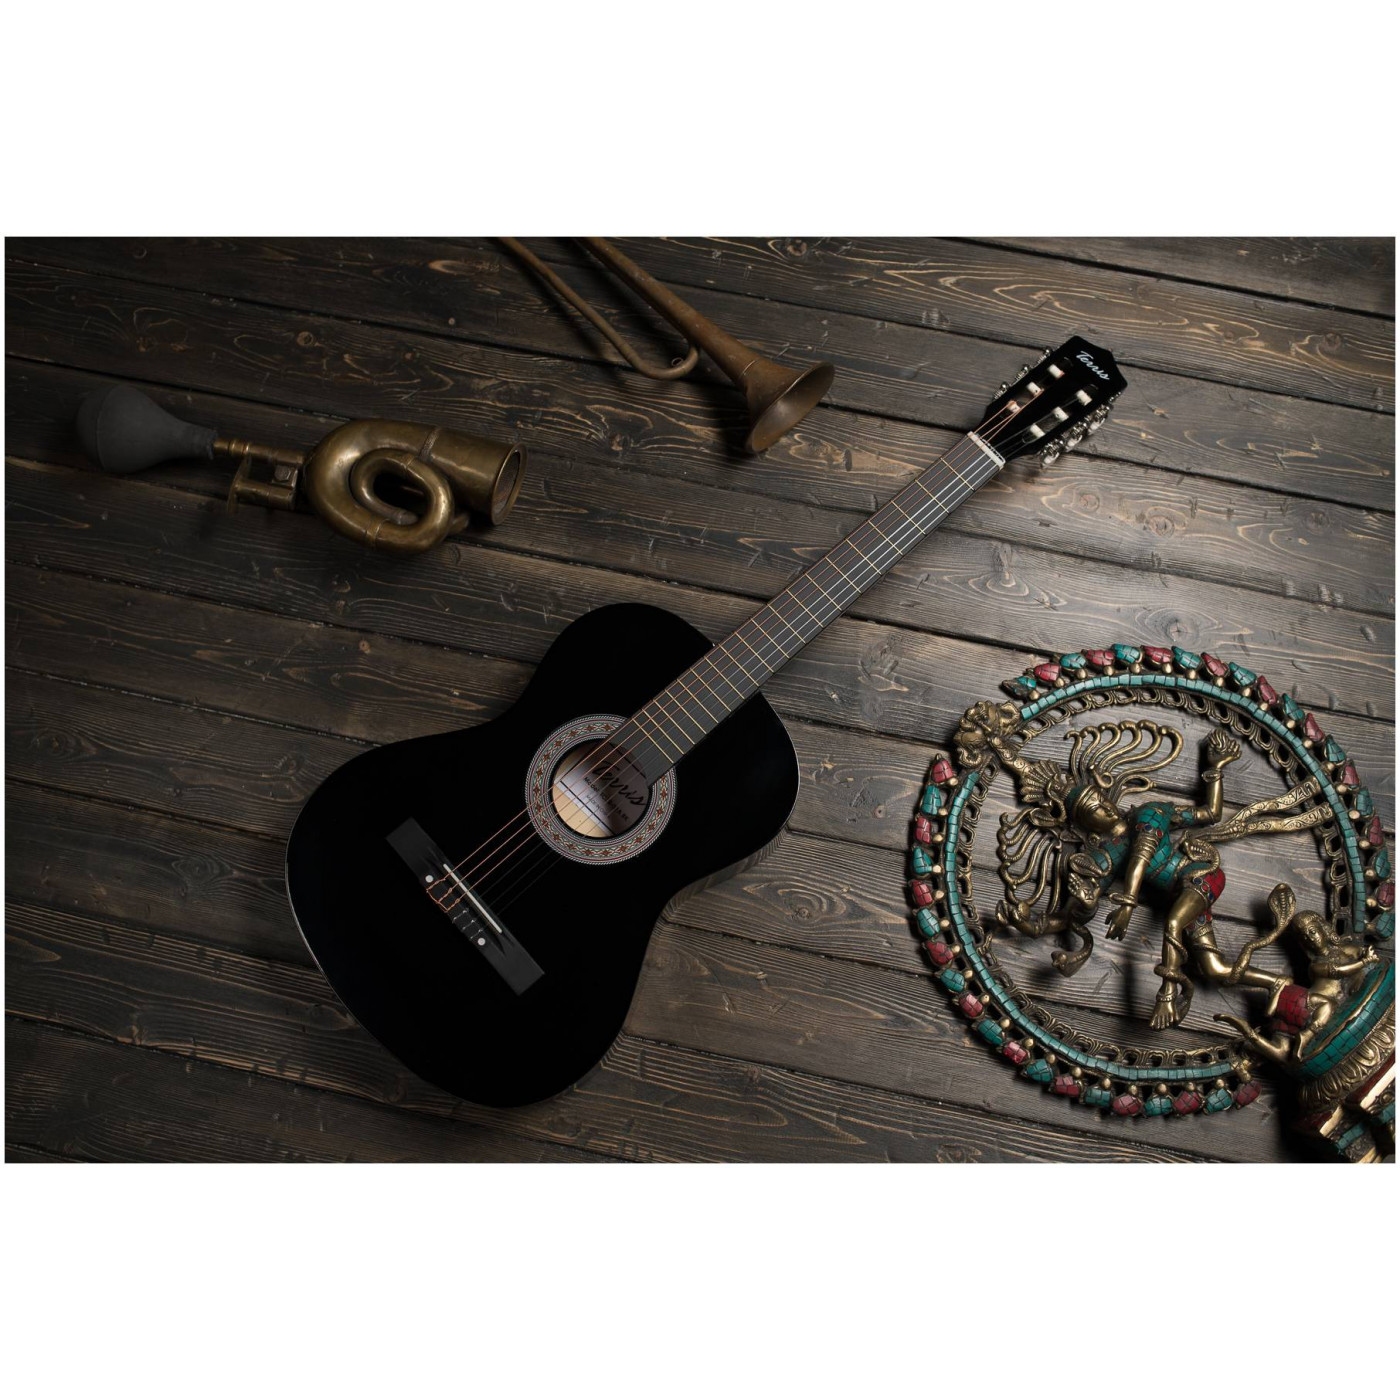 Terris TC-3801A BK гитара классическая 7/8, цвет черный